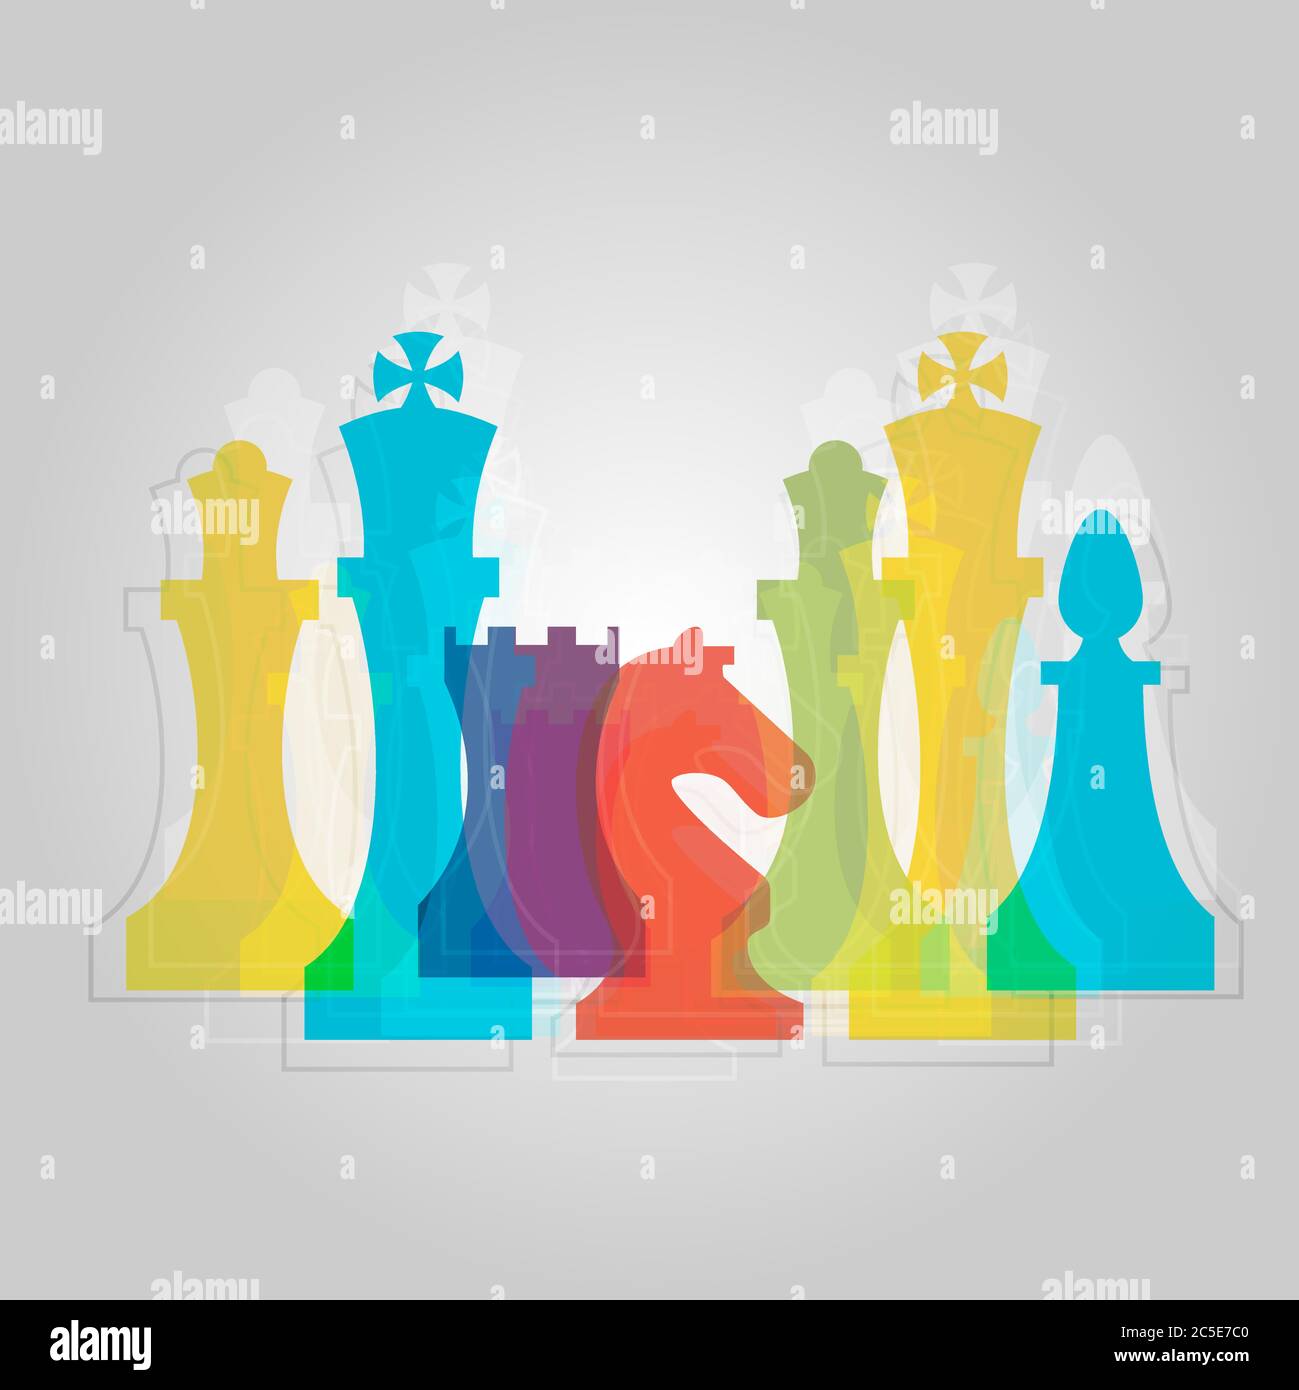 Scacchi pezzi business segno & corporate Identity template per scacchi club o scuola di scacchi. Set di icone vettoriali per pezzi a scacchi standard. Vettore di scacchi colorato Illustrazione Vettoriale